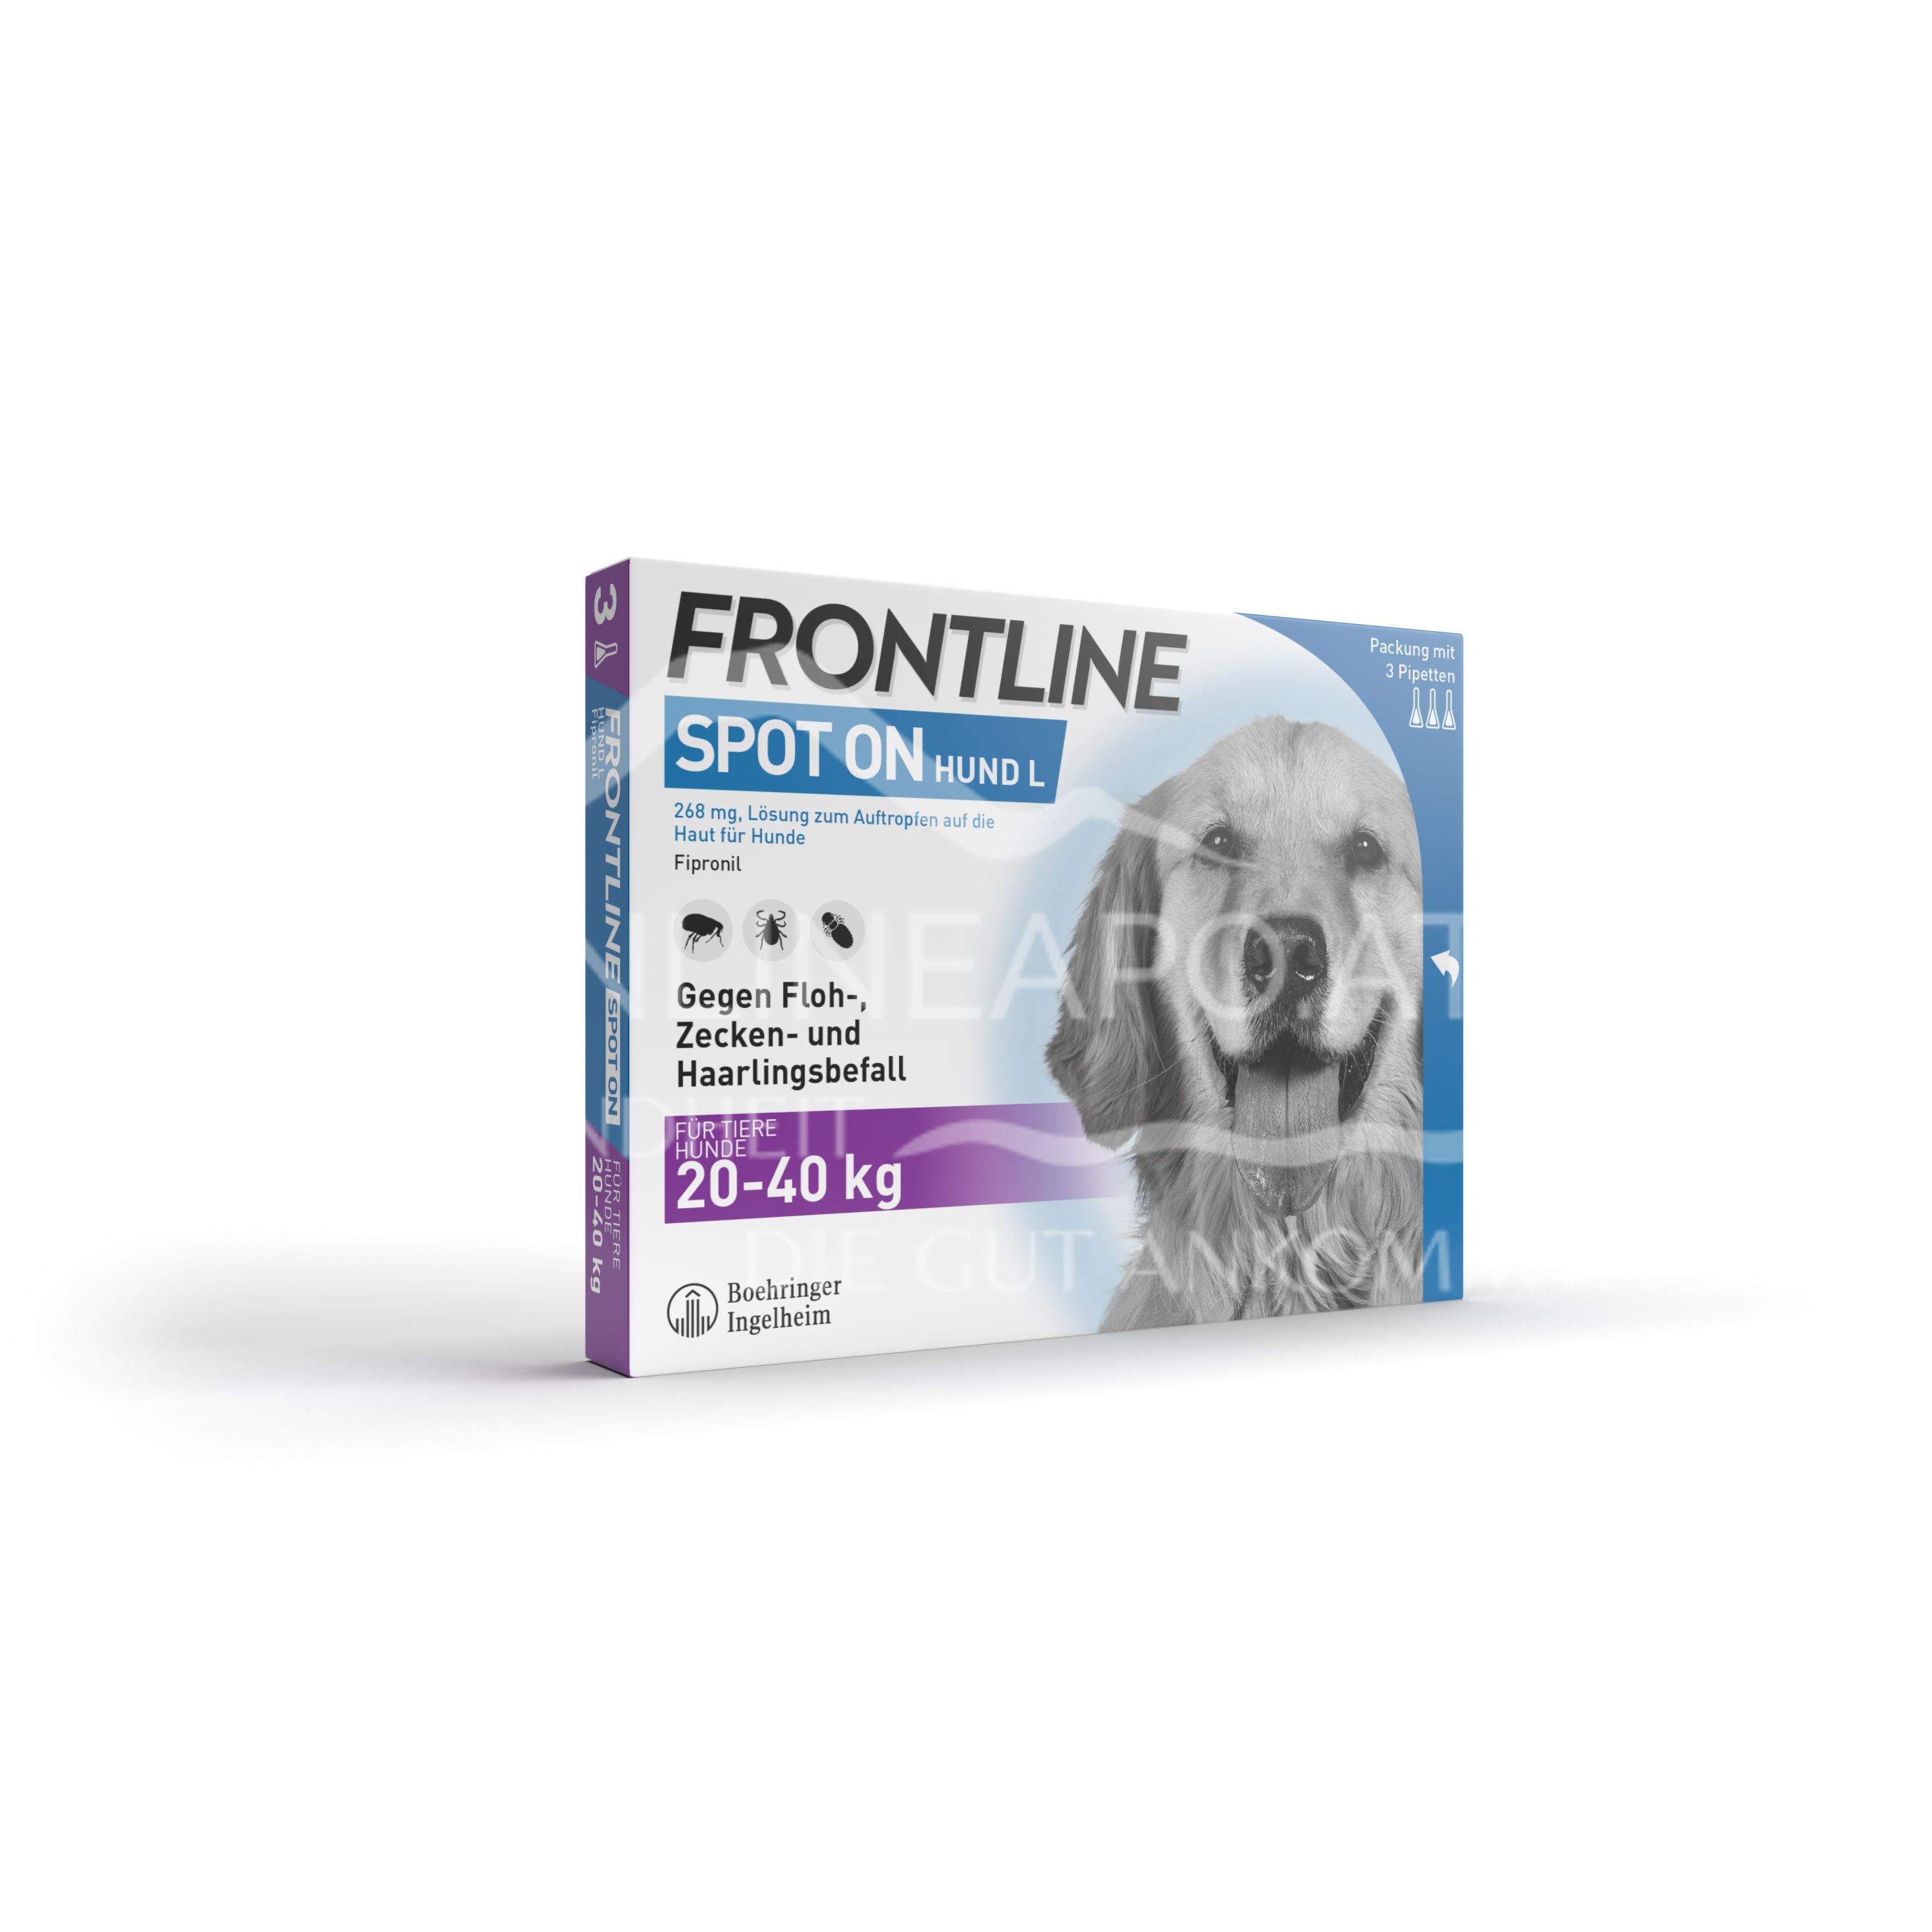 Frontline Spot on Große Hunde 268 mg Lösung zum Auftropfen auf die Haut